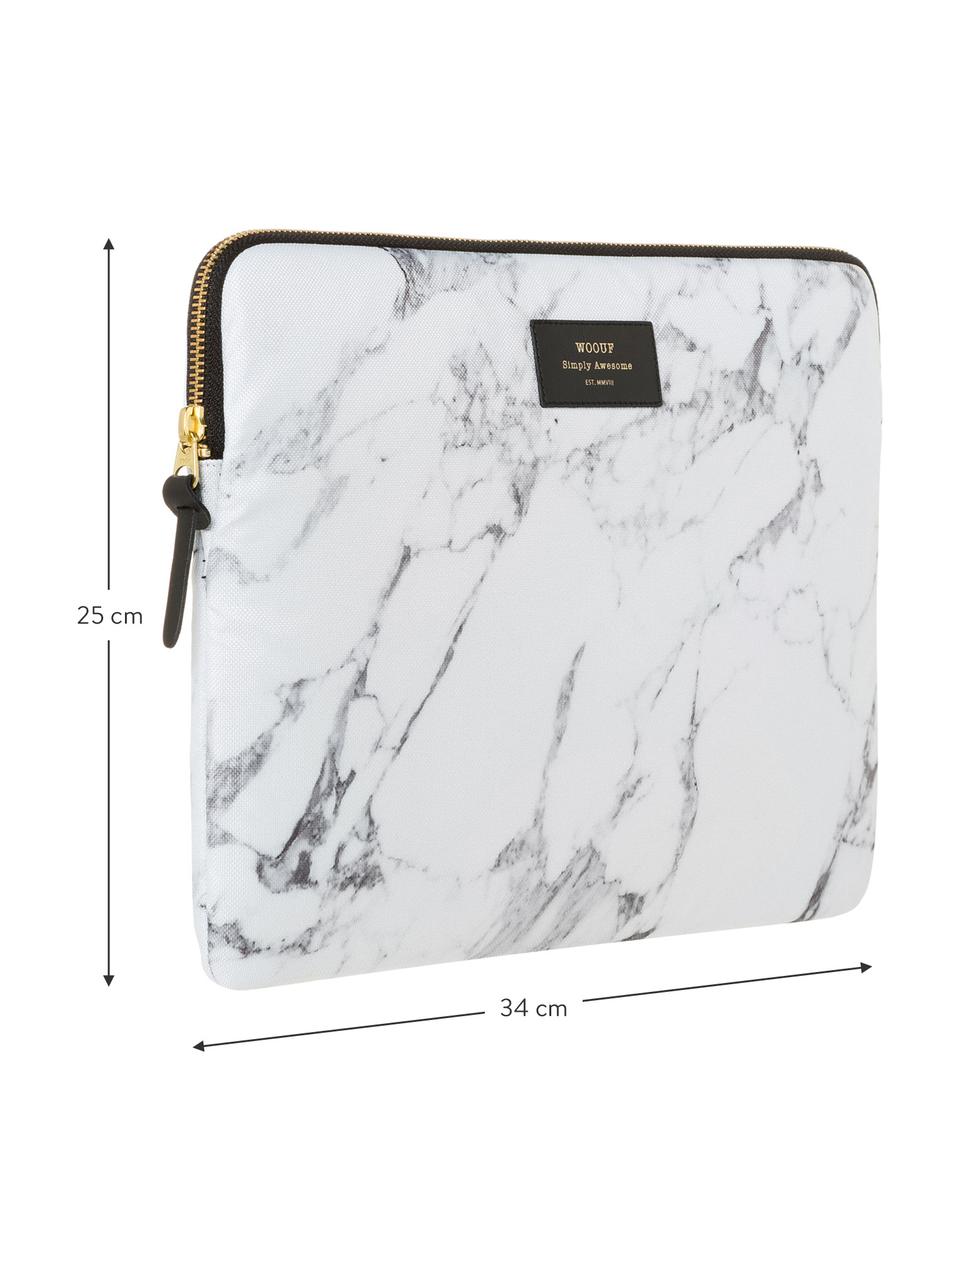 Laptophülle White Marble für MacBook Pro 13 Zoll, Laptoptasche: Weiß, marmoriert Aufdruck: Schwarz mit goldfarbener Schrift, 34 x 25 cm